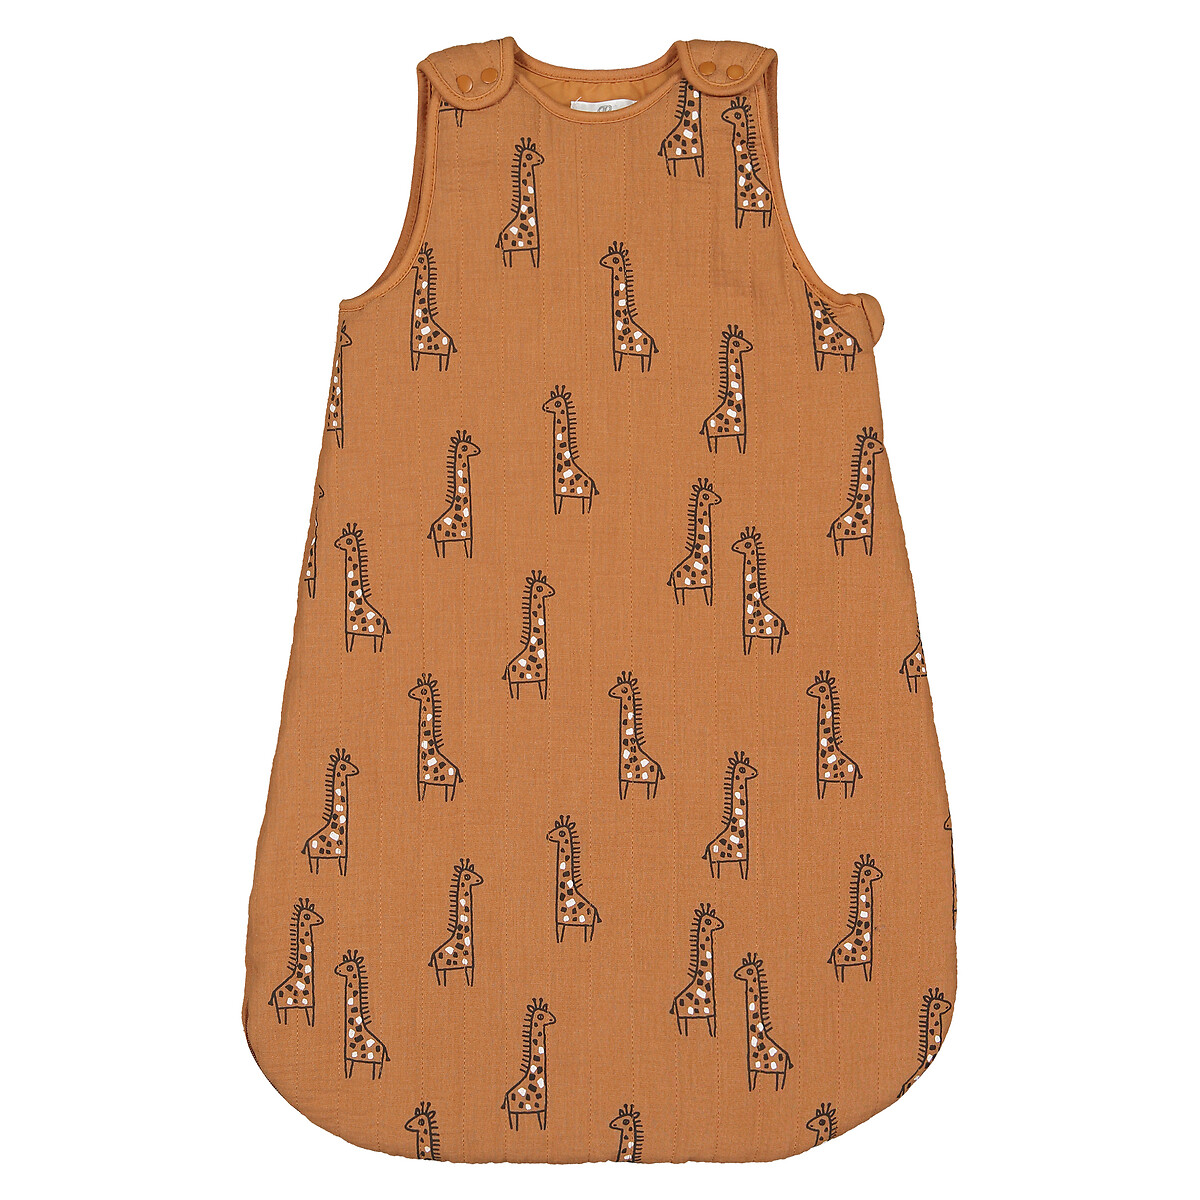 Конверт Из хлопчатобумажной газовой ткани с рисунком жирафы 0/6 мес. - 50/67 см каштановый